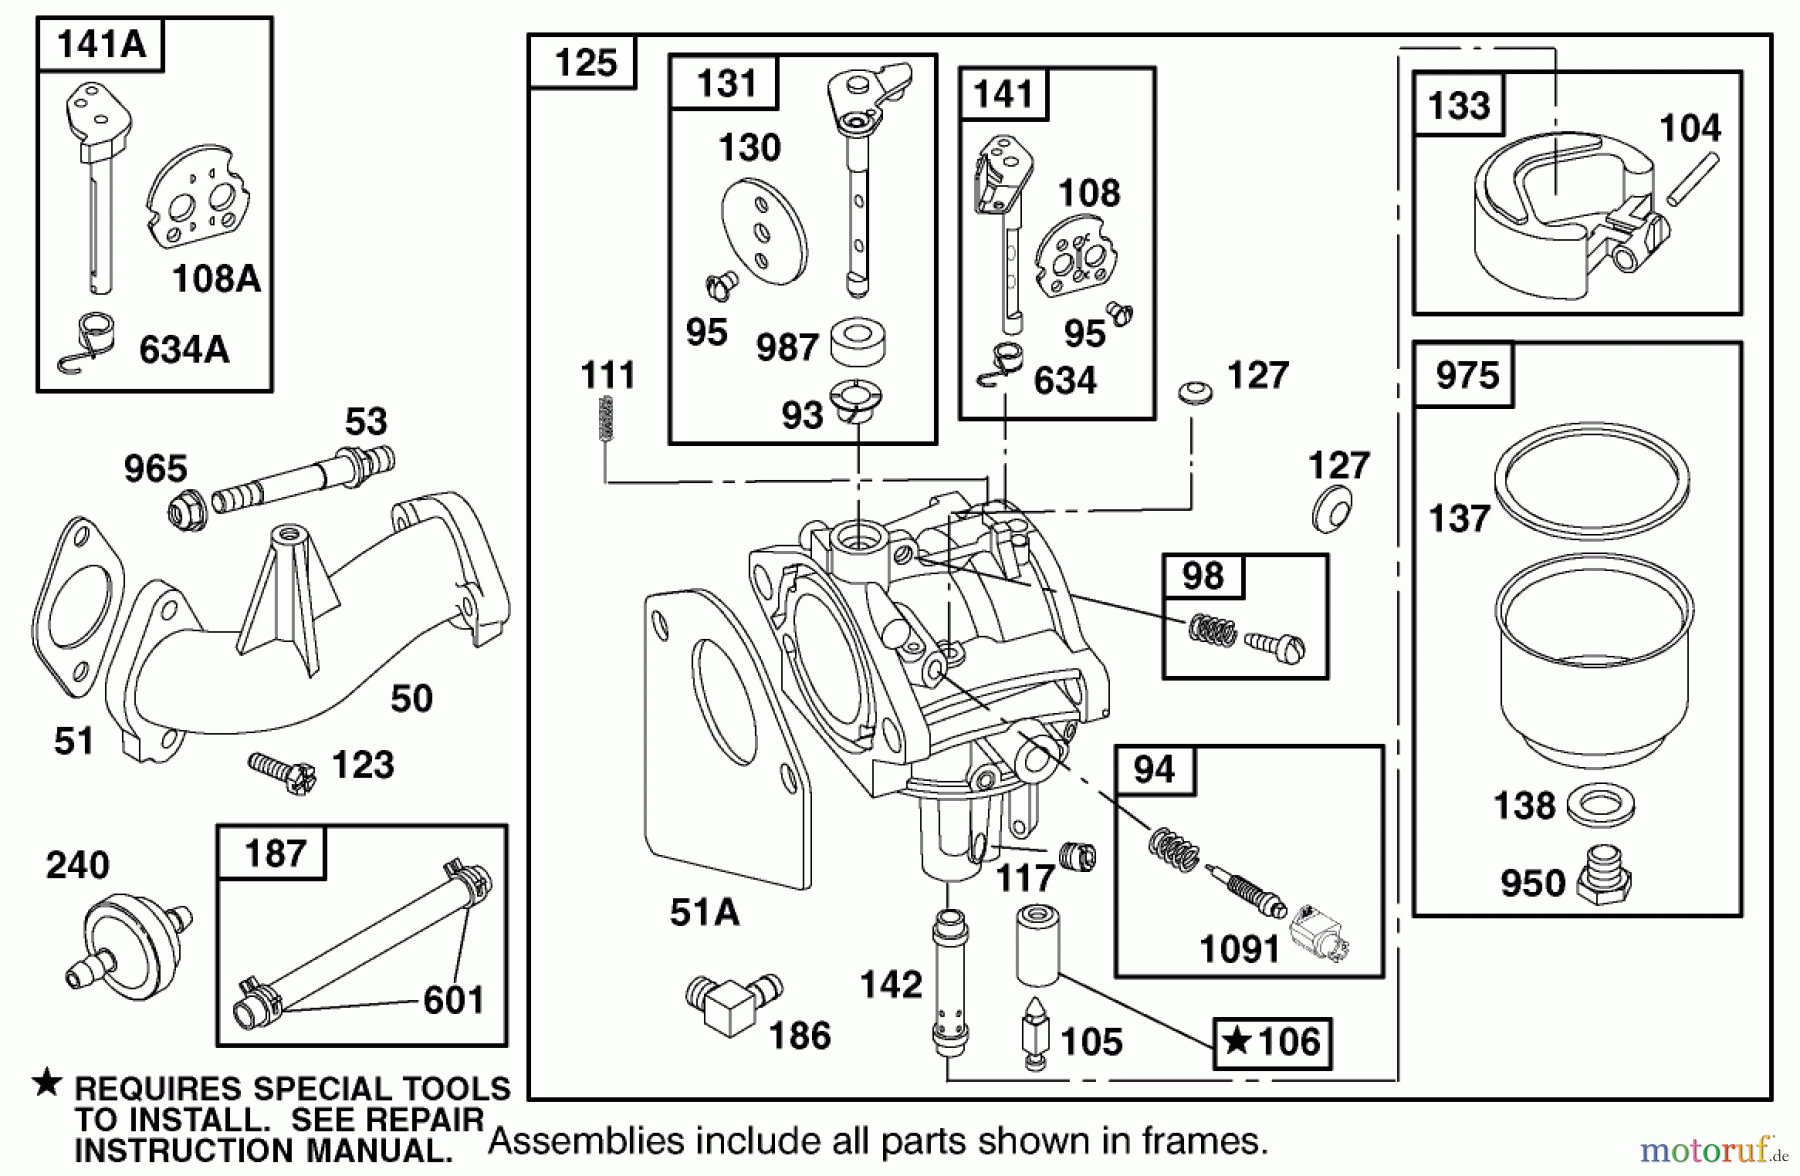  Toro Neu Mowers, Lawn & Garden Tractor Seite 1 71300 (12-32XL) - Toro 12-32XL Lawn Tractor, 2000 (200000001-200999999) ENGINE BRIGGS & STRATTON MODEL 284707-1148-E1 #4